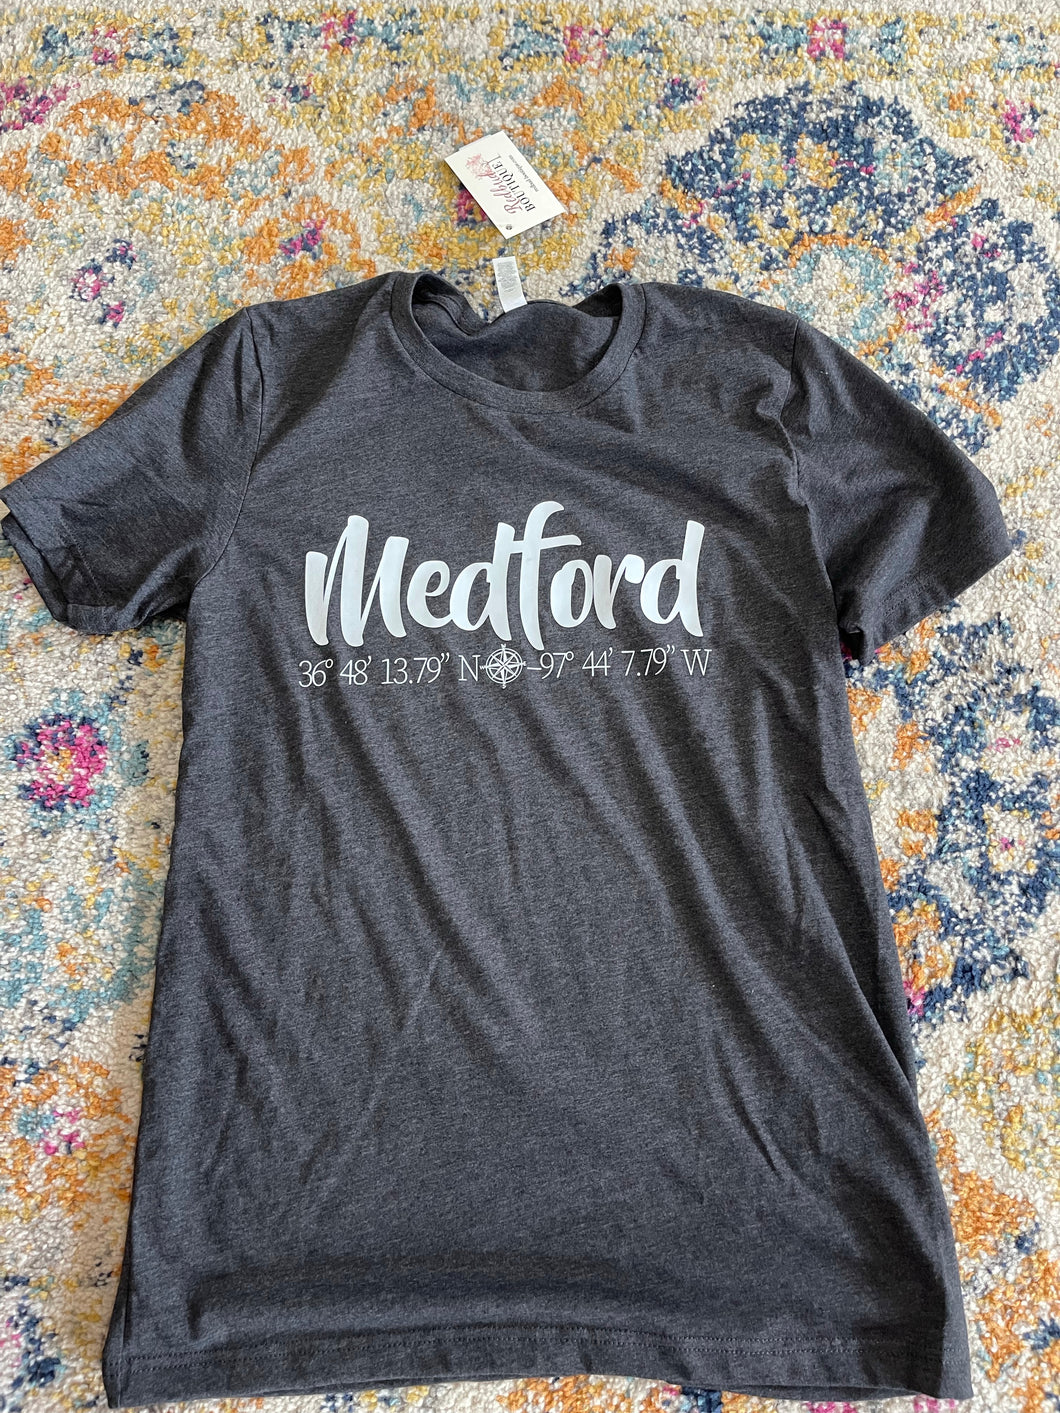 Medford short sleeve